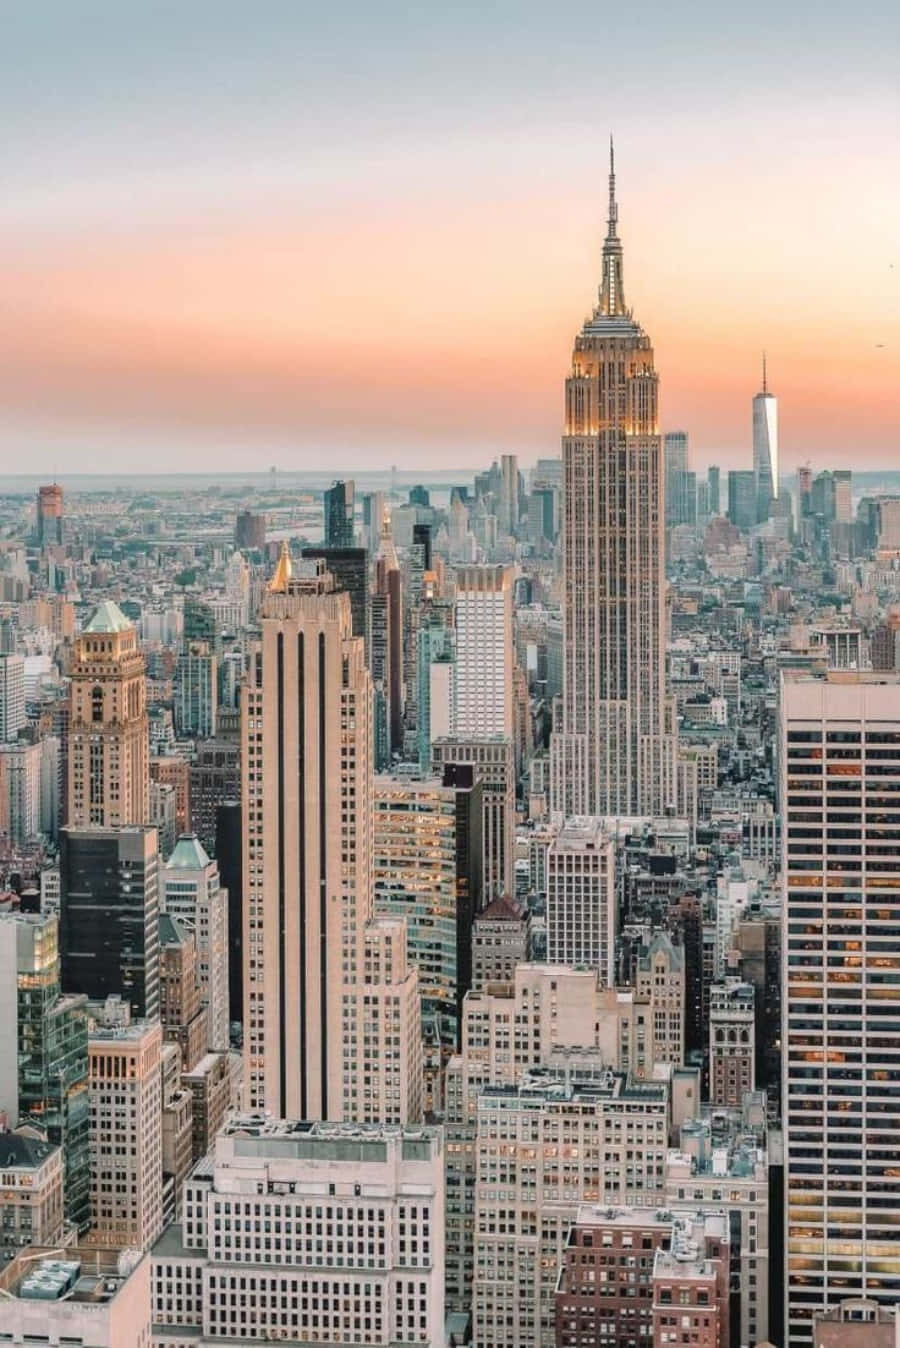 Etsmukt Luftfoto Af Den Ikoniske New York City Skyline.